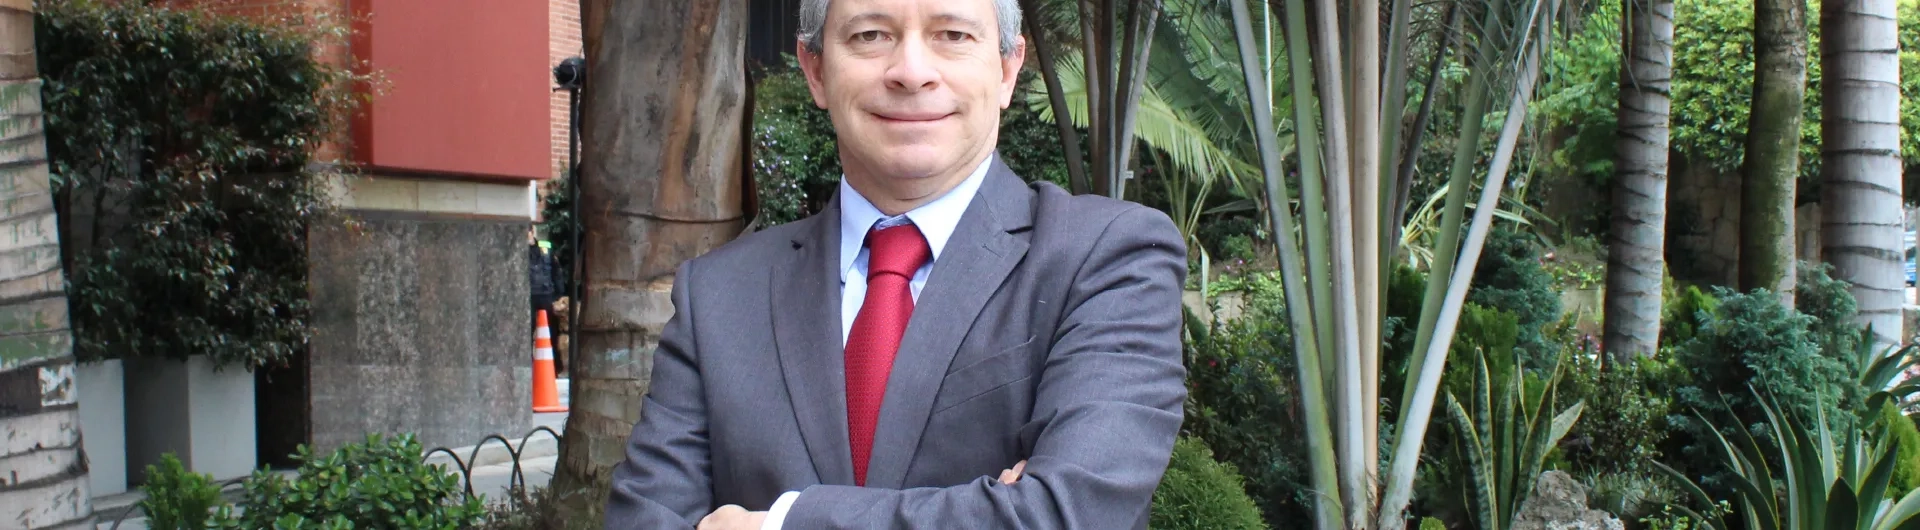 Ricardo Gómez rector universidad IBERO